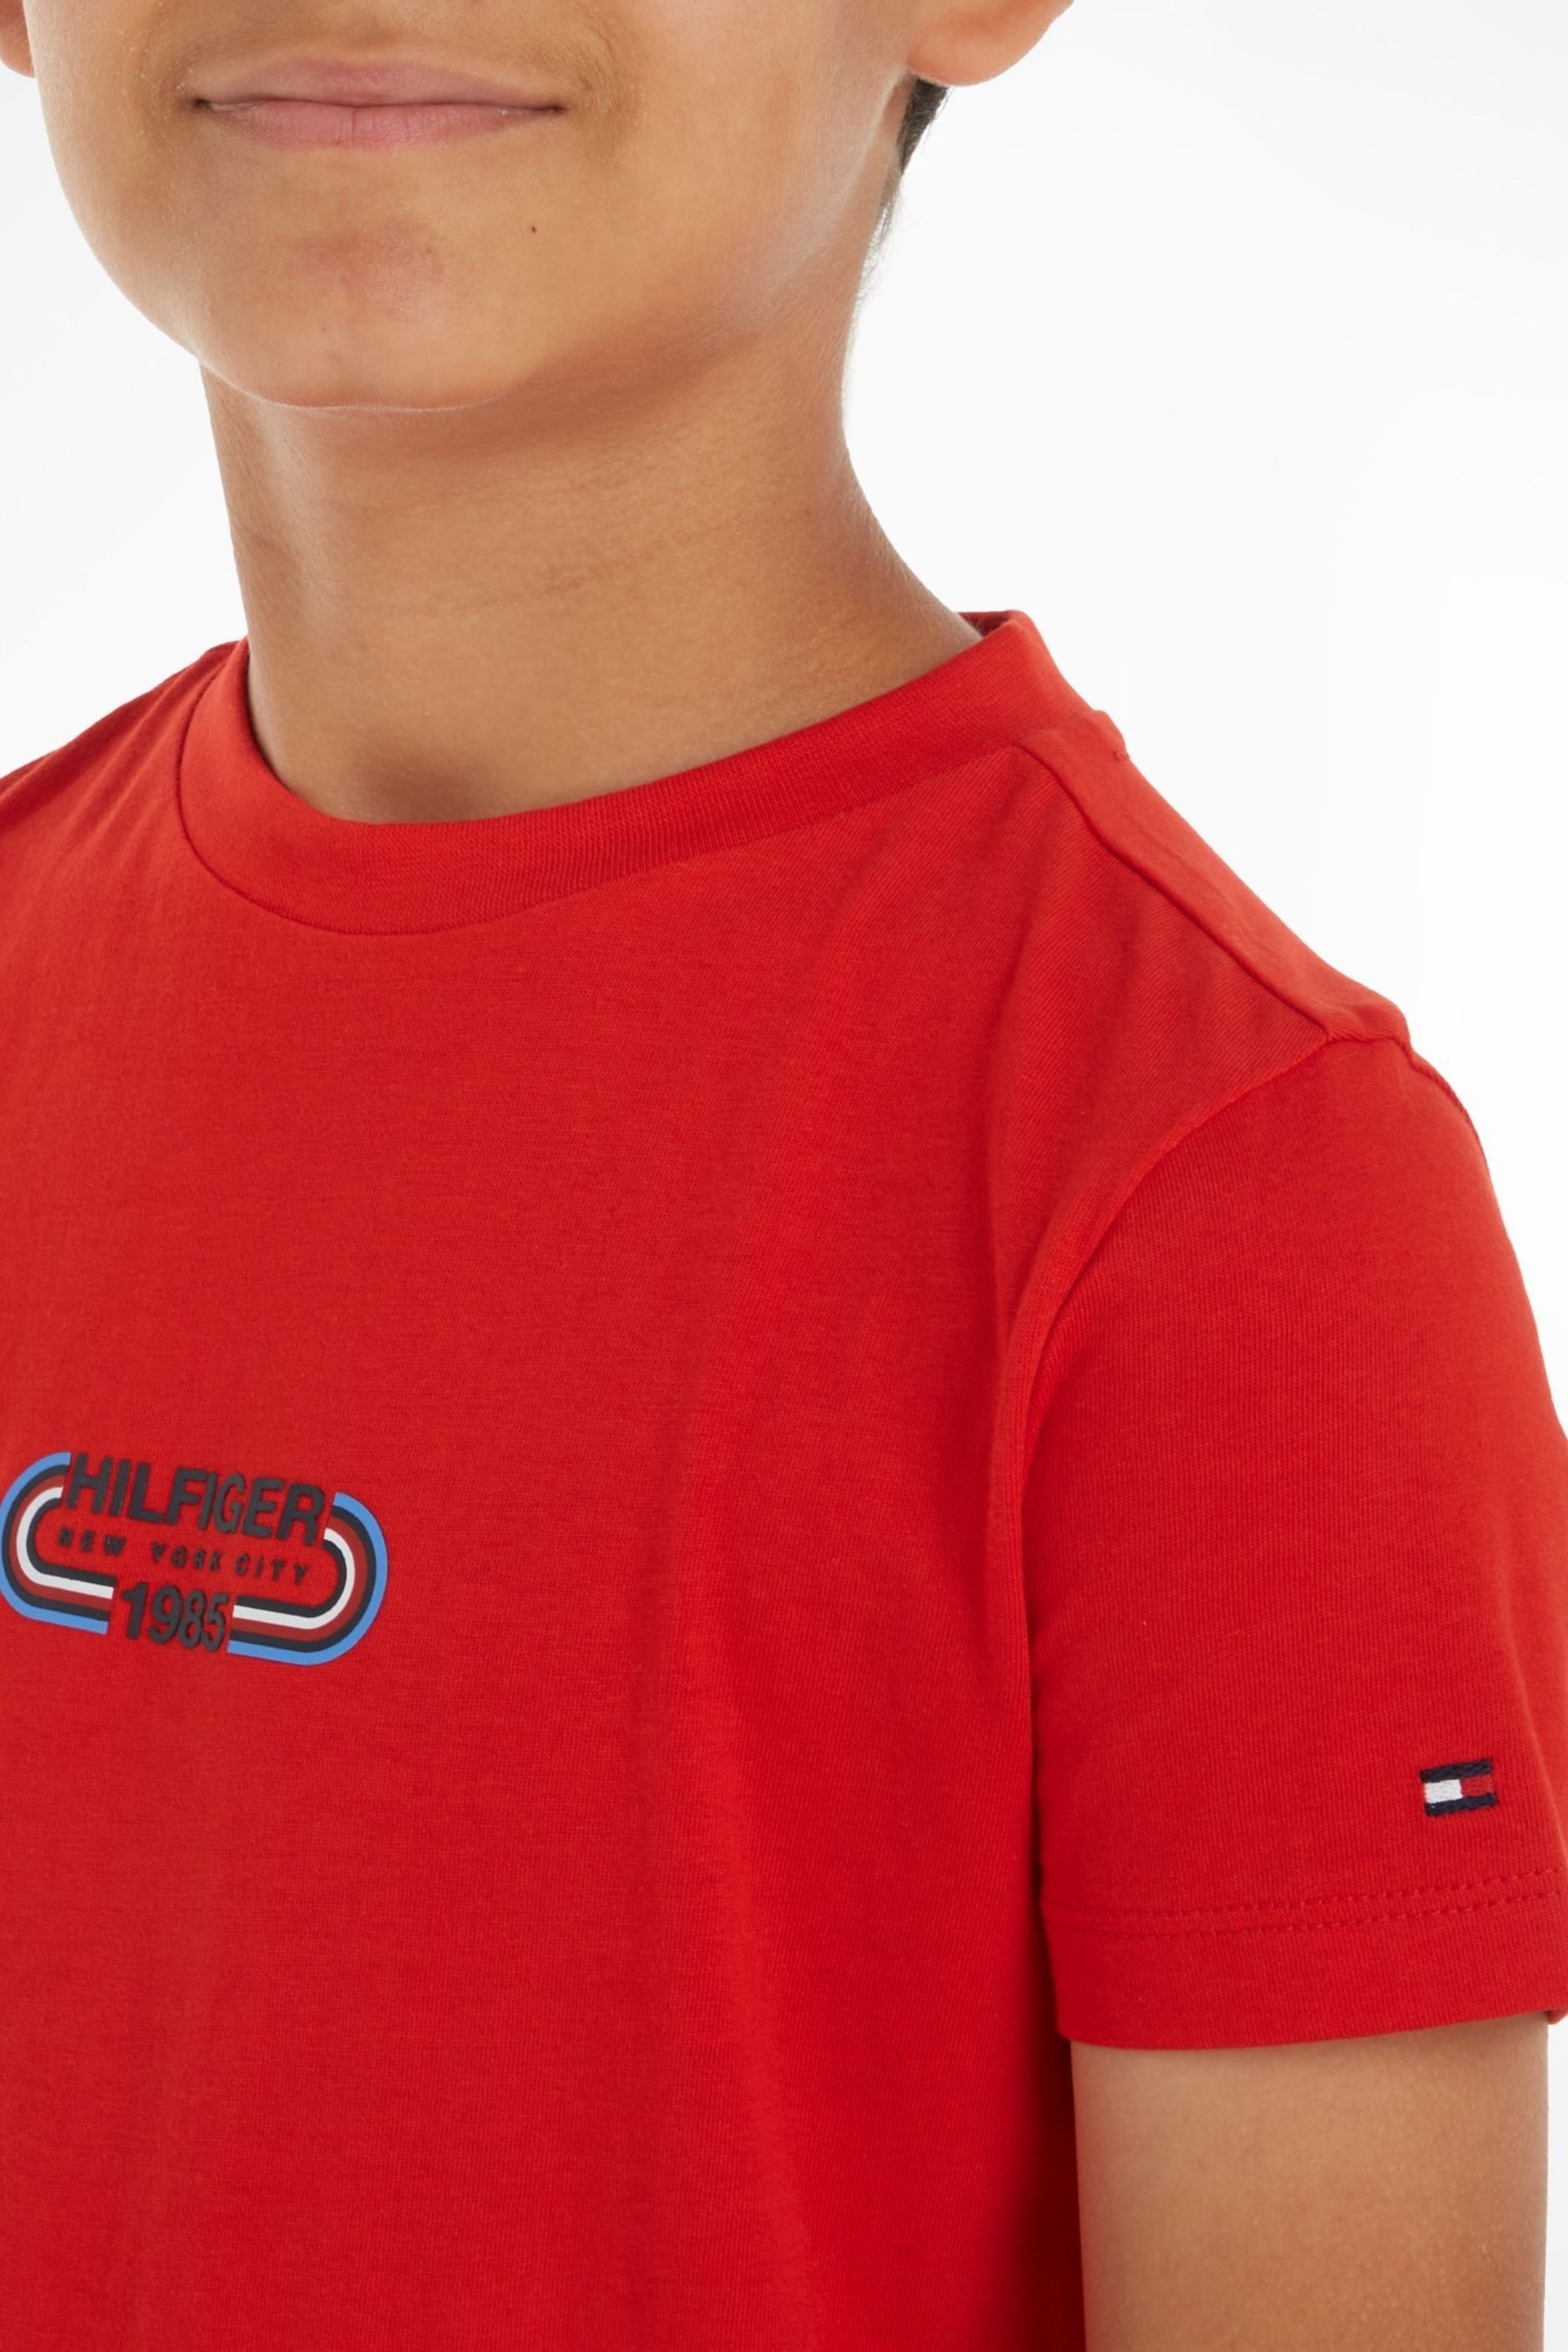 Tommy Hilfiger Hilfiger Track T-Shirt - Image 3 of 6